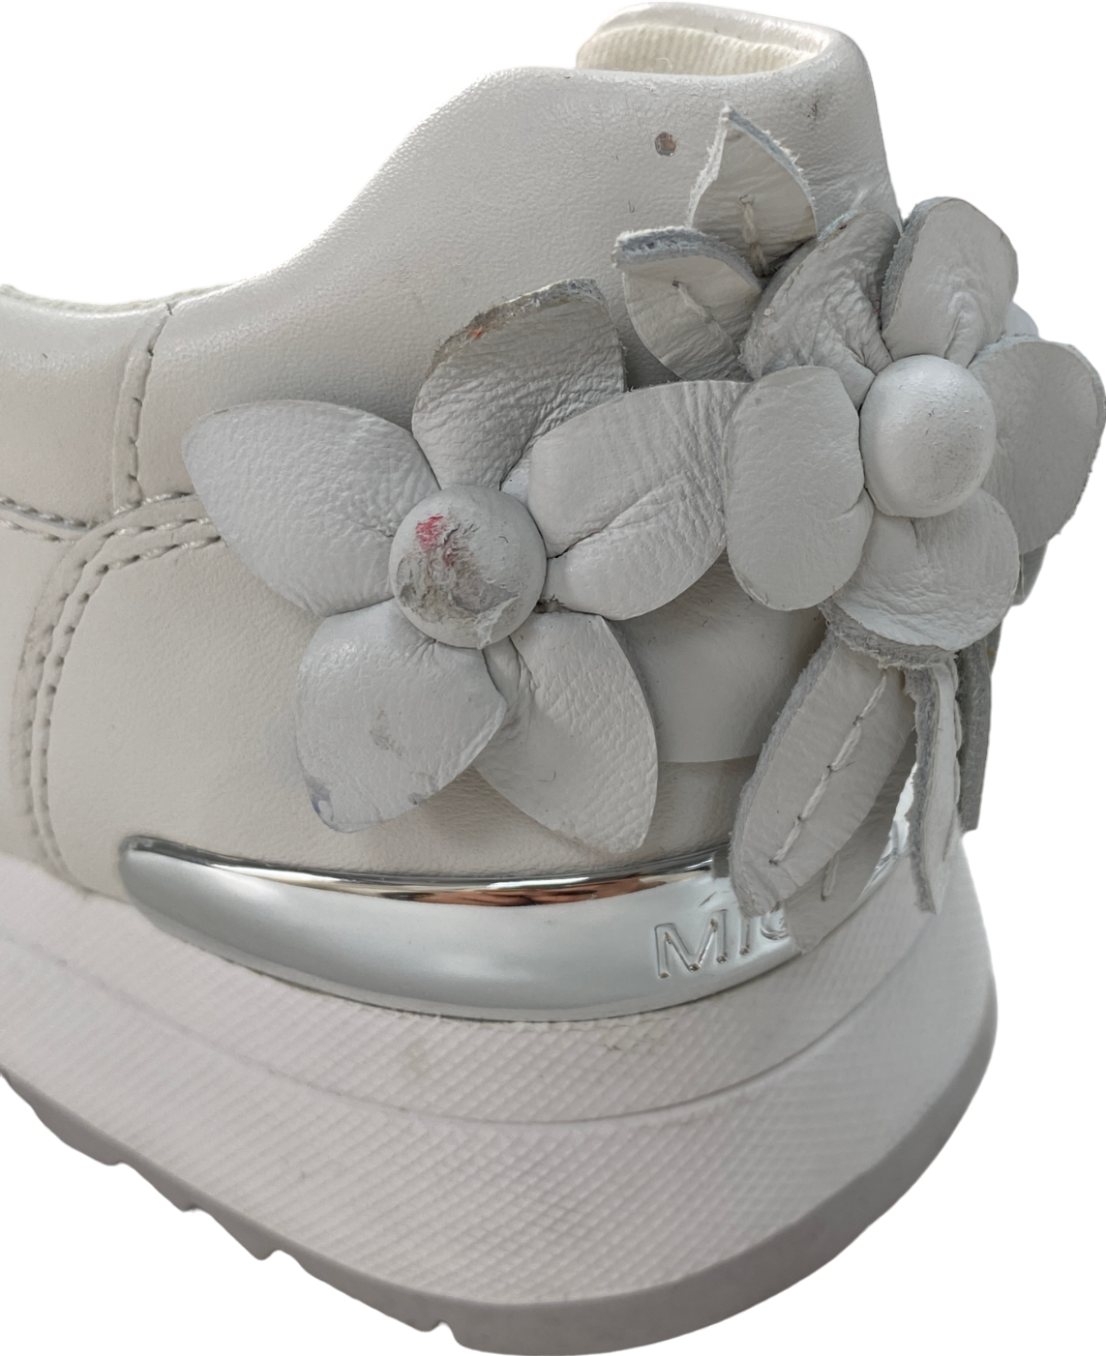 Michael Kors White Allie Floral Appliqué Leather Trainers UK 3.5 EU 36.5 👠